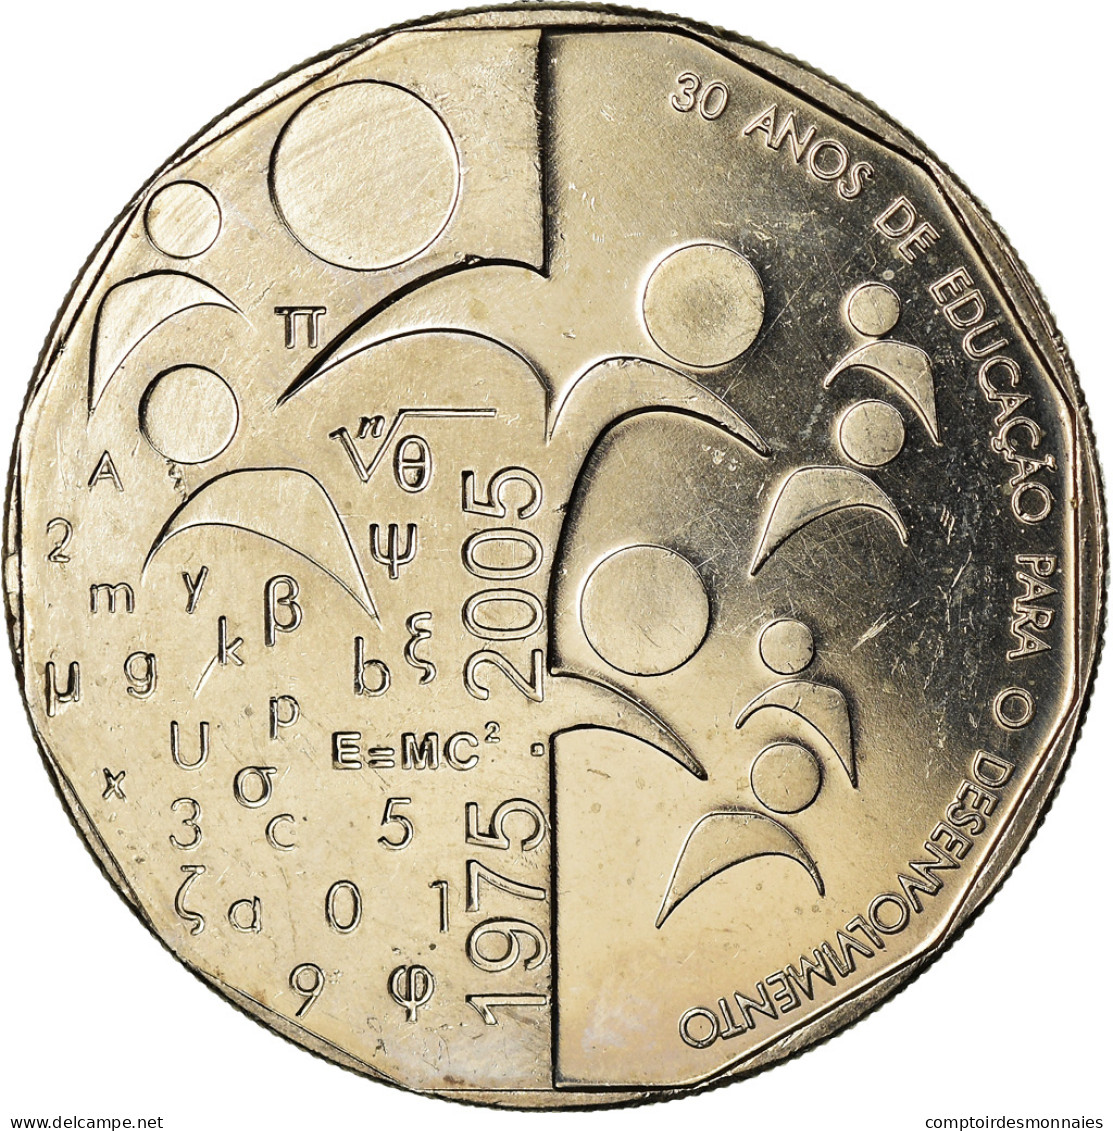 Monnaie, Cape Verde, 200 Escudos, 2005, 30 Ans De L'Indépendance, SPL - Cap Vert